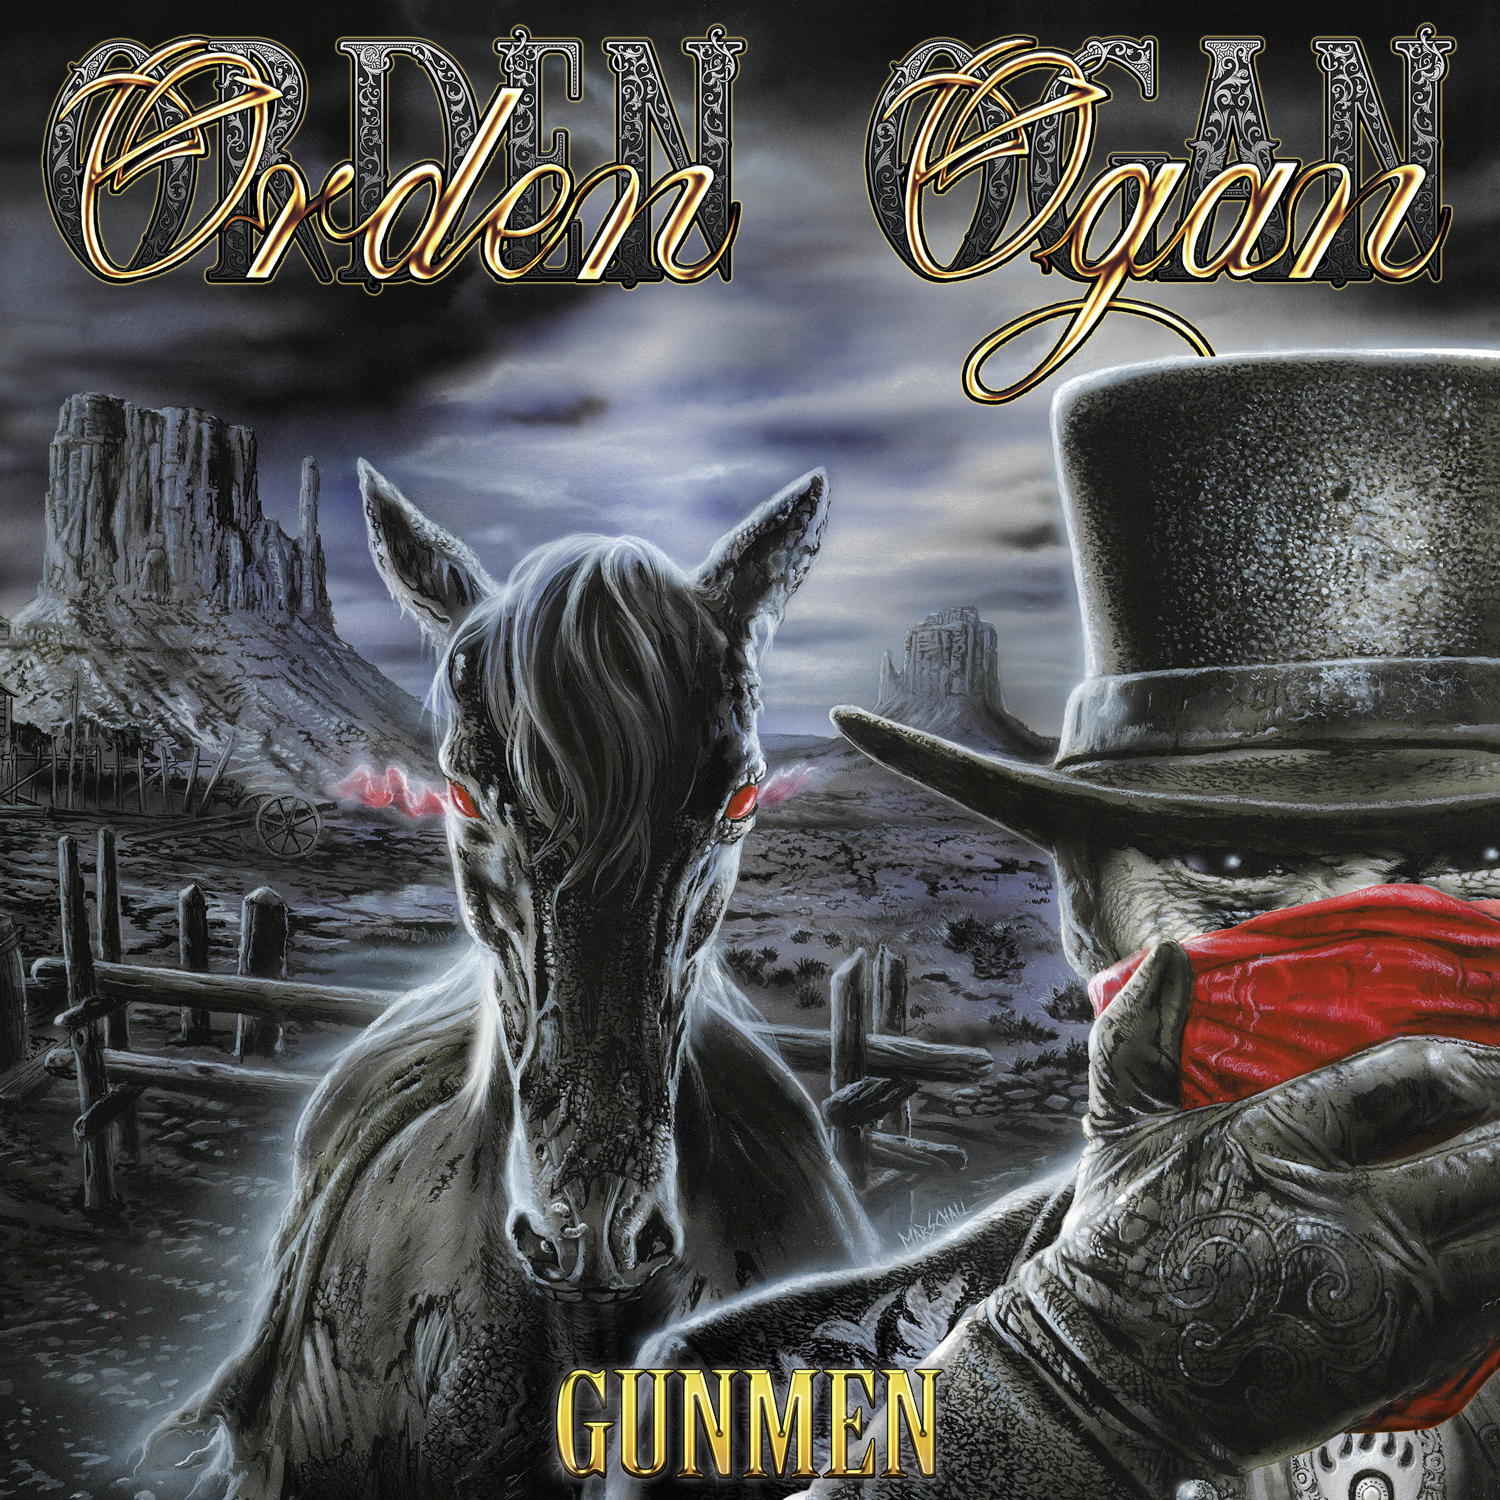 Orden Ogan – Gunmen